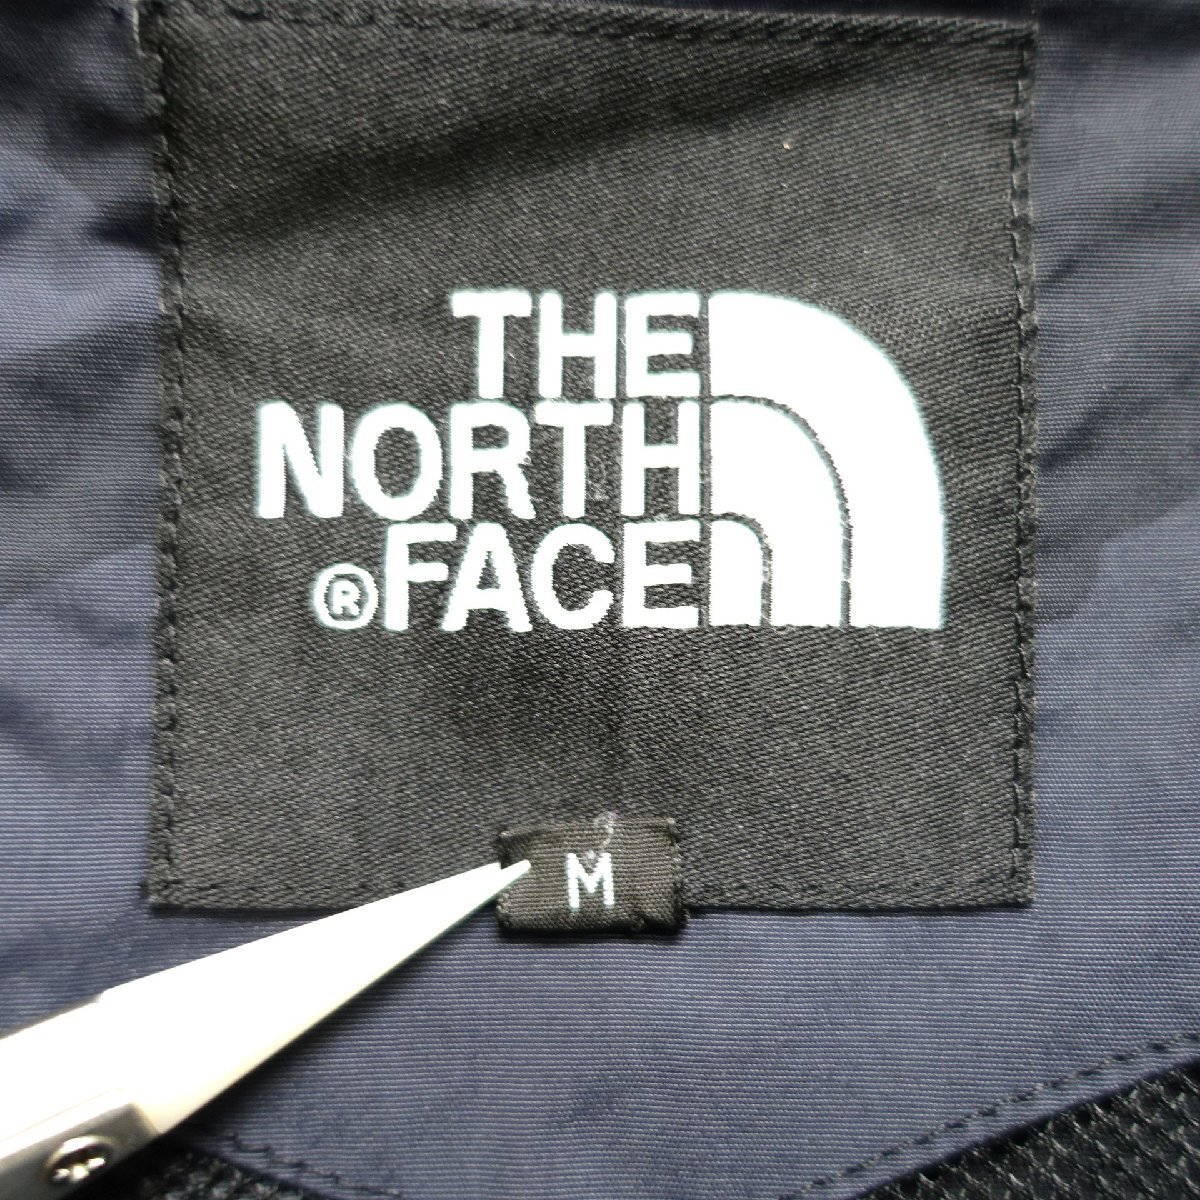 THE NORTH FACE ノースフェイス マウンテンパーカー メンズ Mサイズ 正規品 ブラック カモフラージュ A5366_画像5